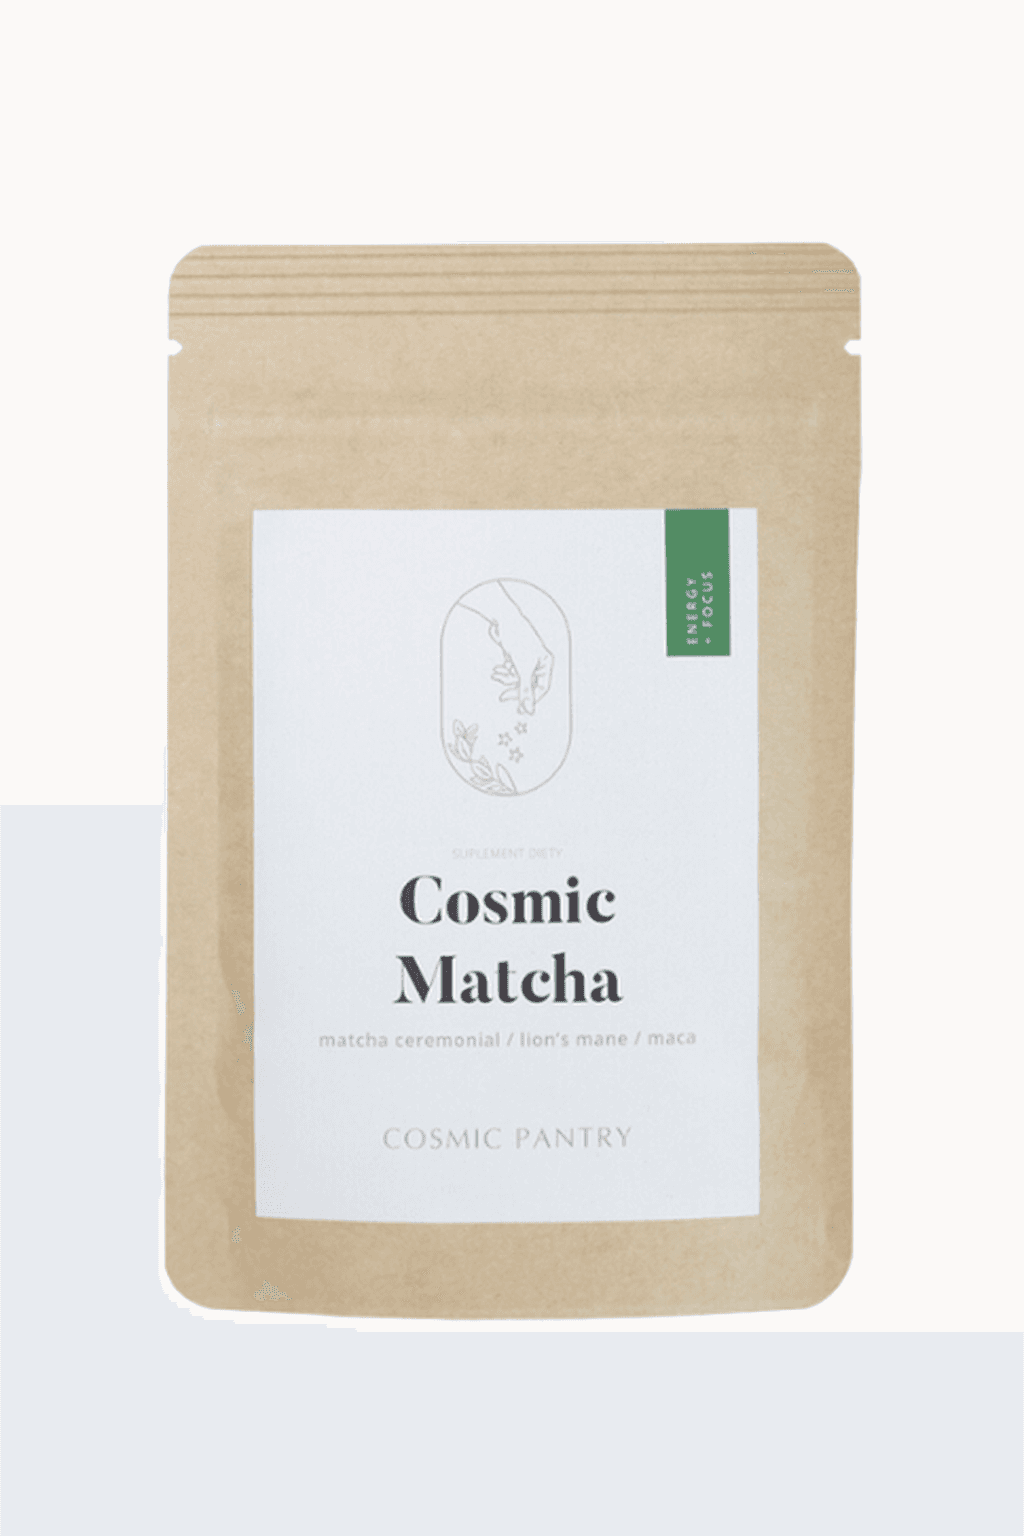 Cosmic Matcha